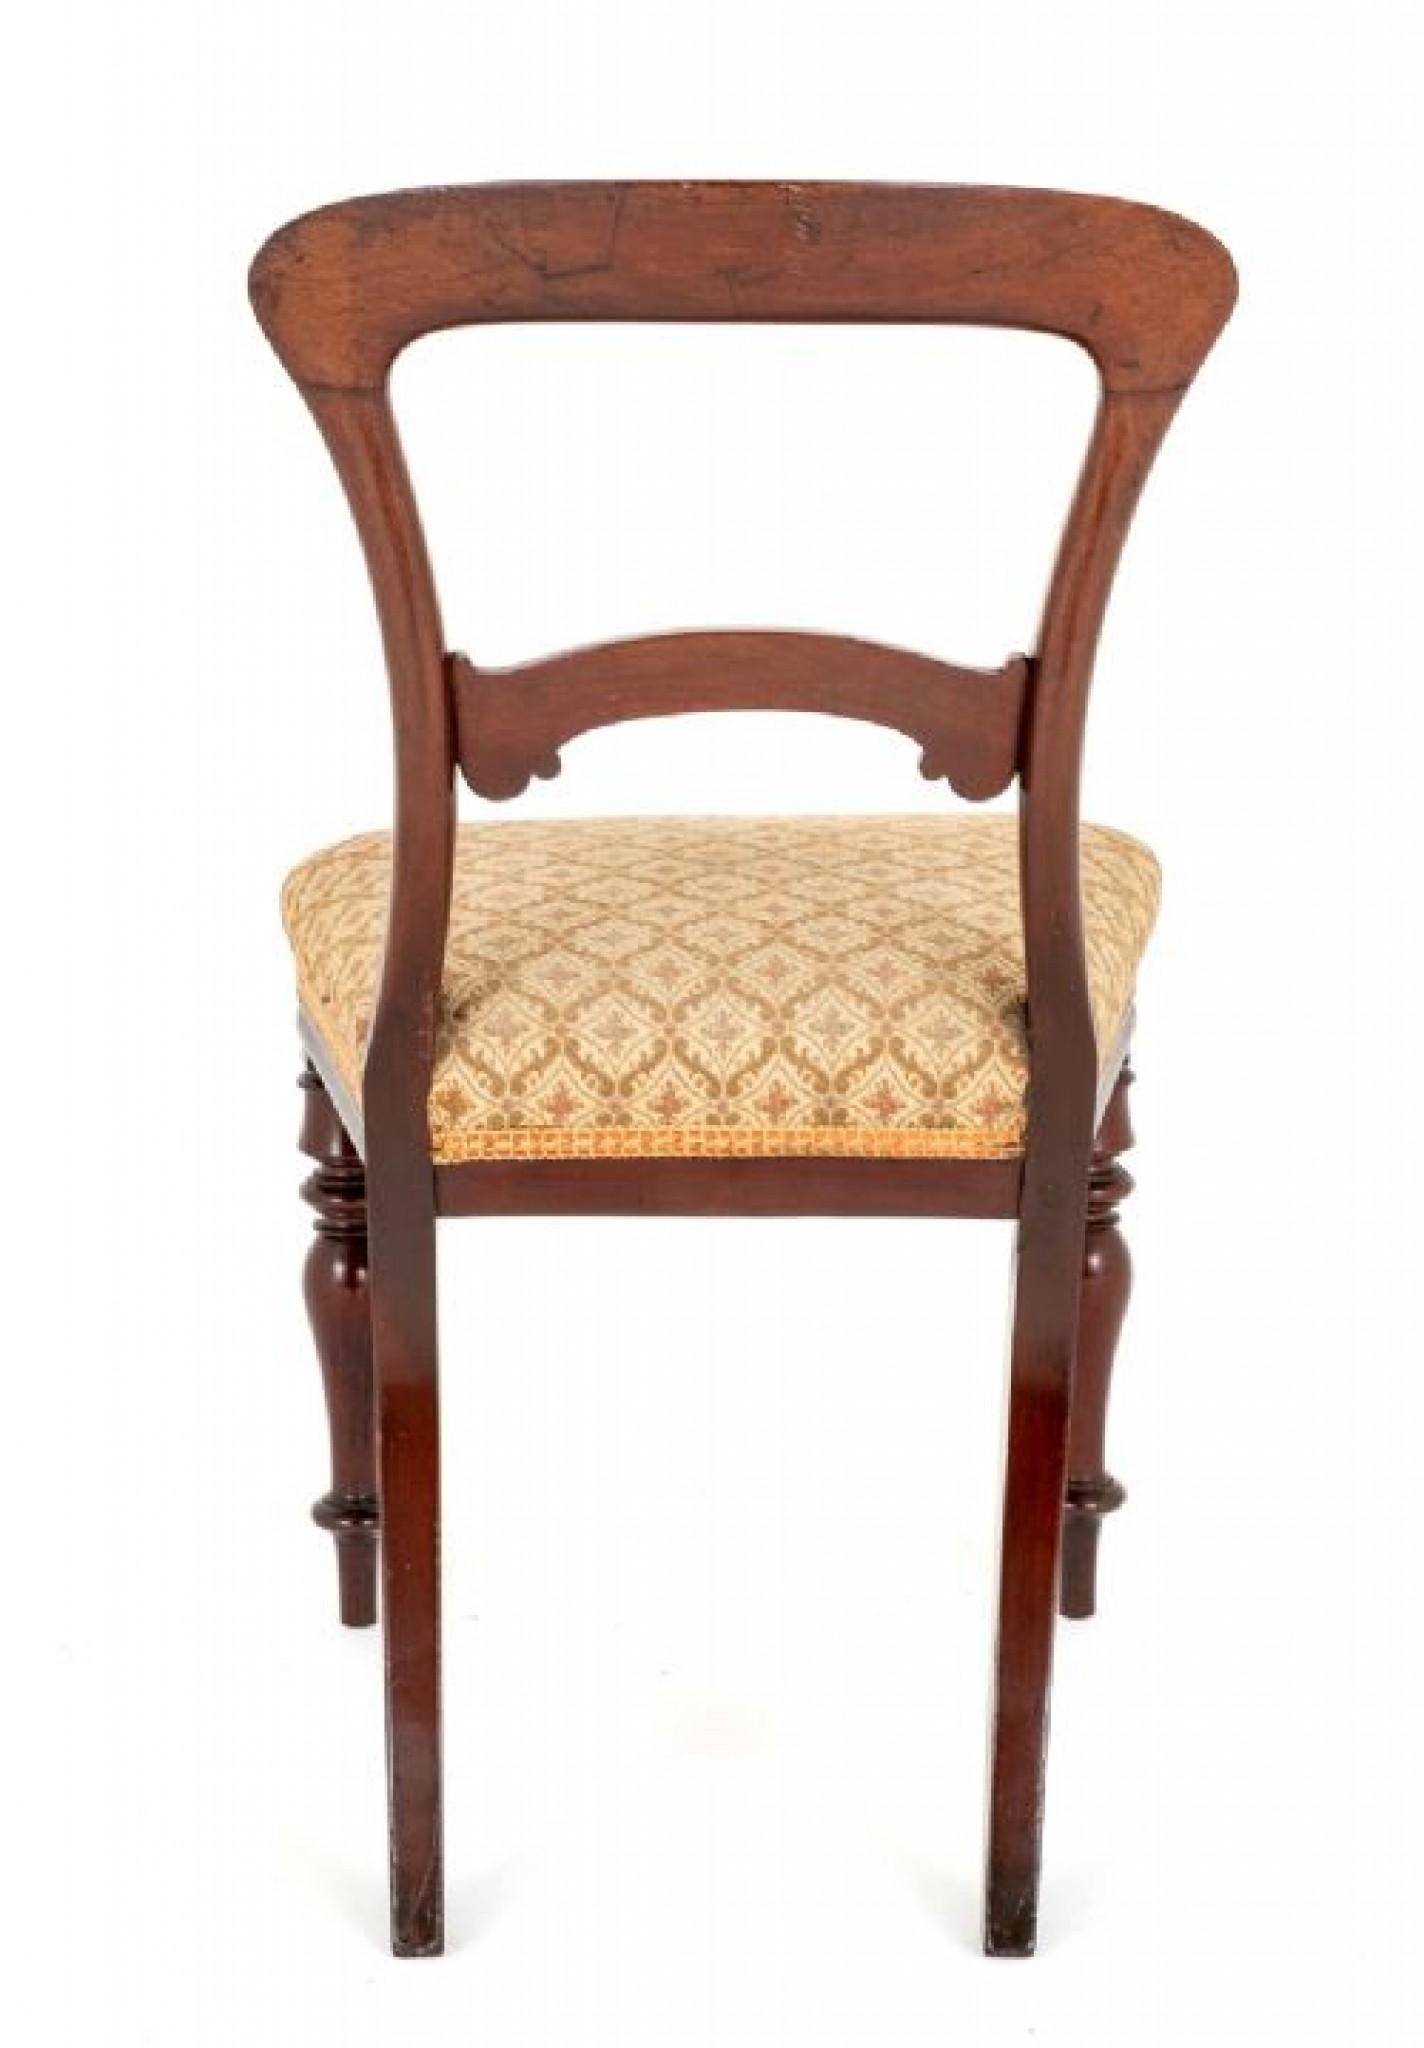 Satz von 6 viktorianischen Esszimmerstühlen aus Mahagoni.
Diese Stühle haben ringgedrehte Vorderbeine und geformte Hinterbeine.
Die Stühle sind mit Stoff über den Sitzen ausgestattet (extra Komfort)
Jeder Stuhl hat eine geformte Rückenlehne mit